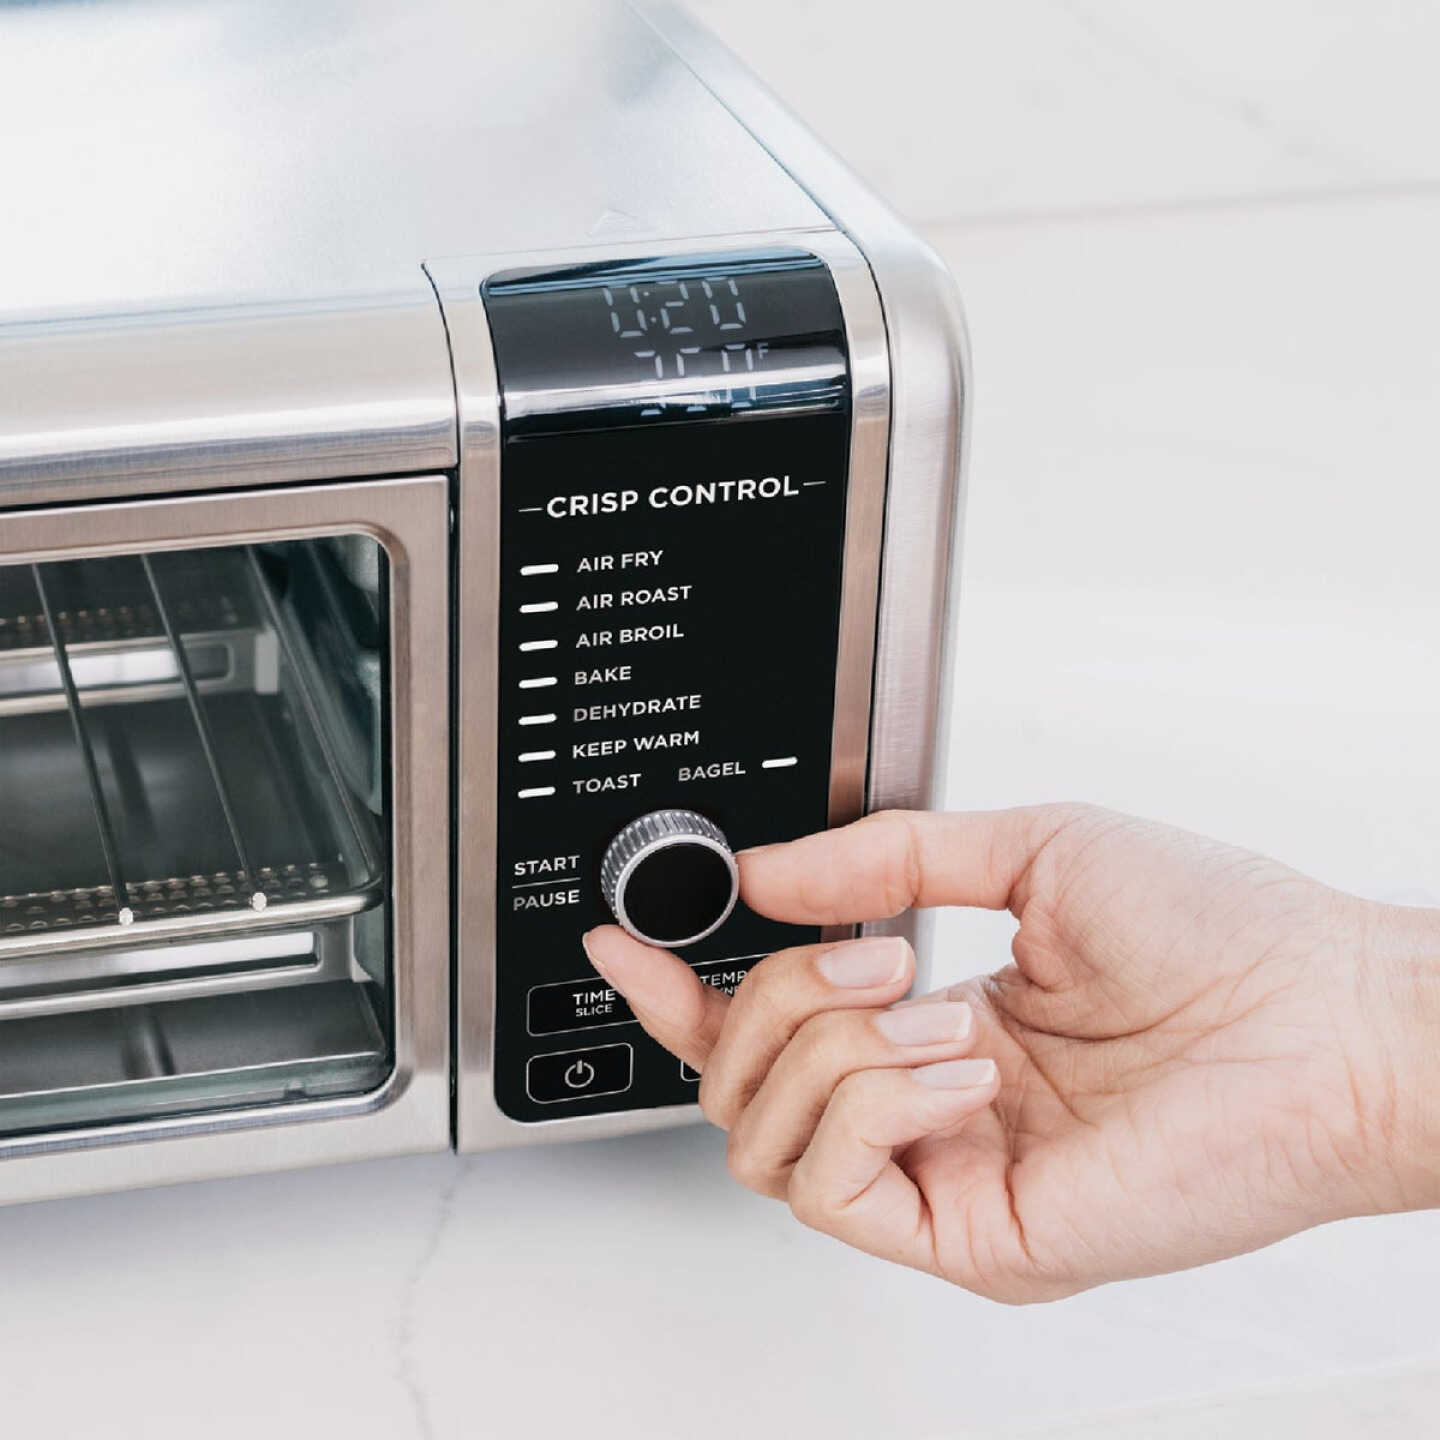 Ninja SP101 Foodi 8-in-1 Digital Air Fryer Oven Review 2023